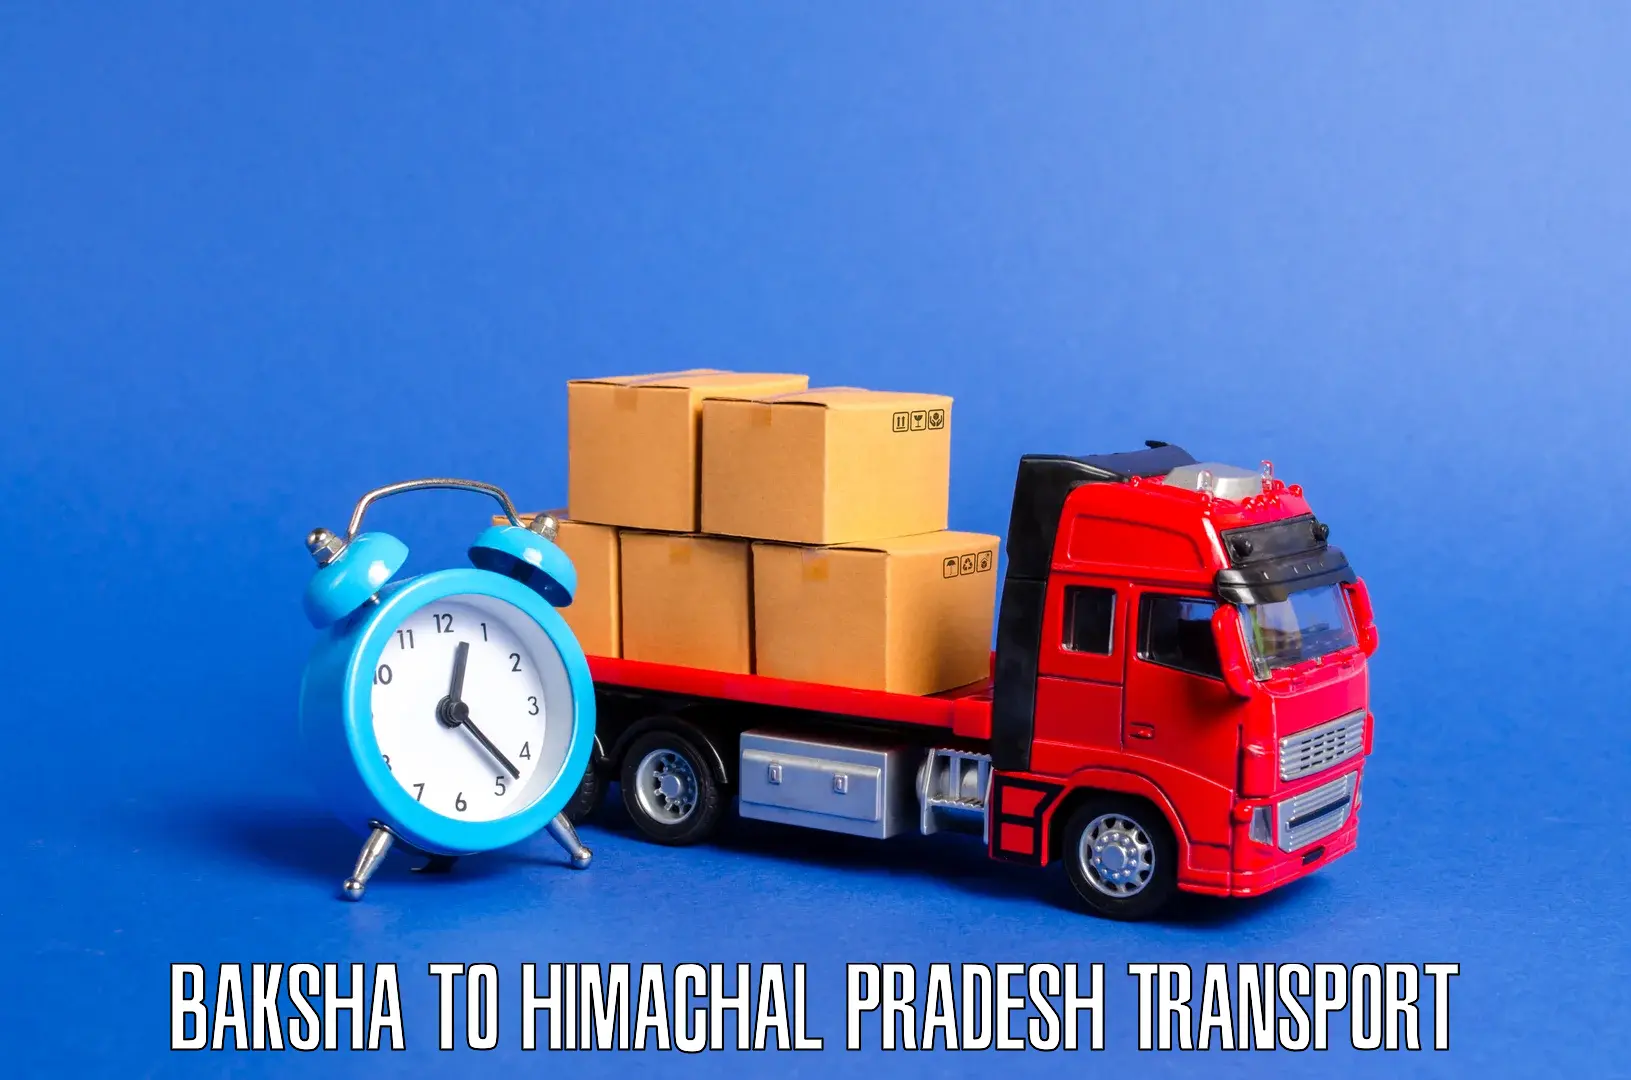 Land transport services in Baksha to Himachal Pradesh